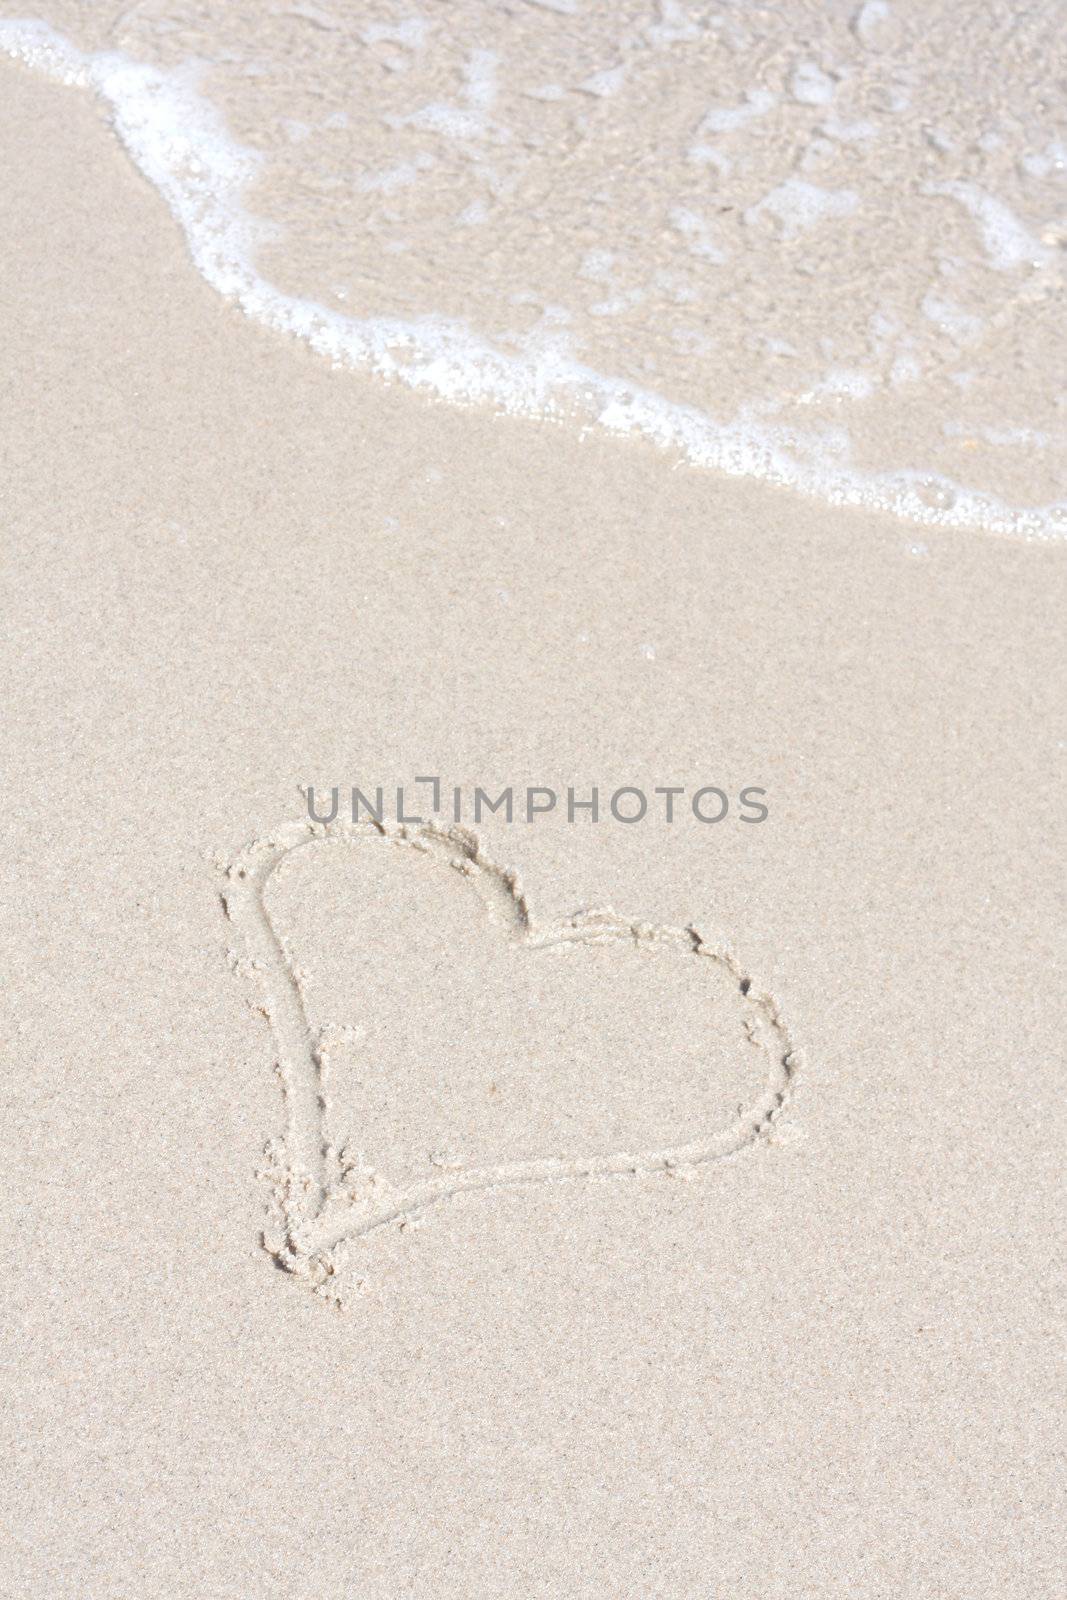 A heart symbol on the beach